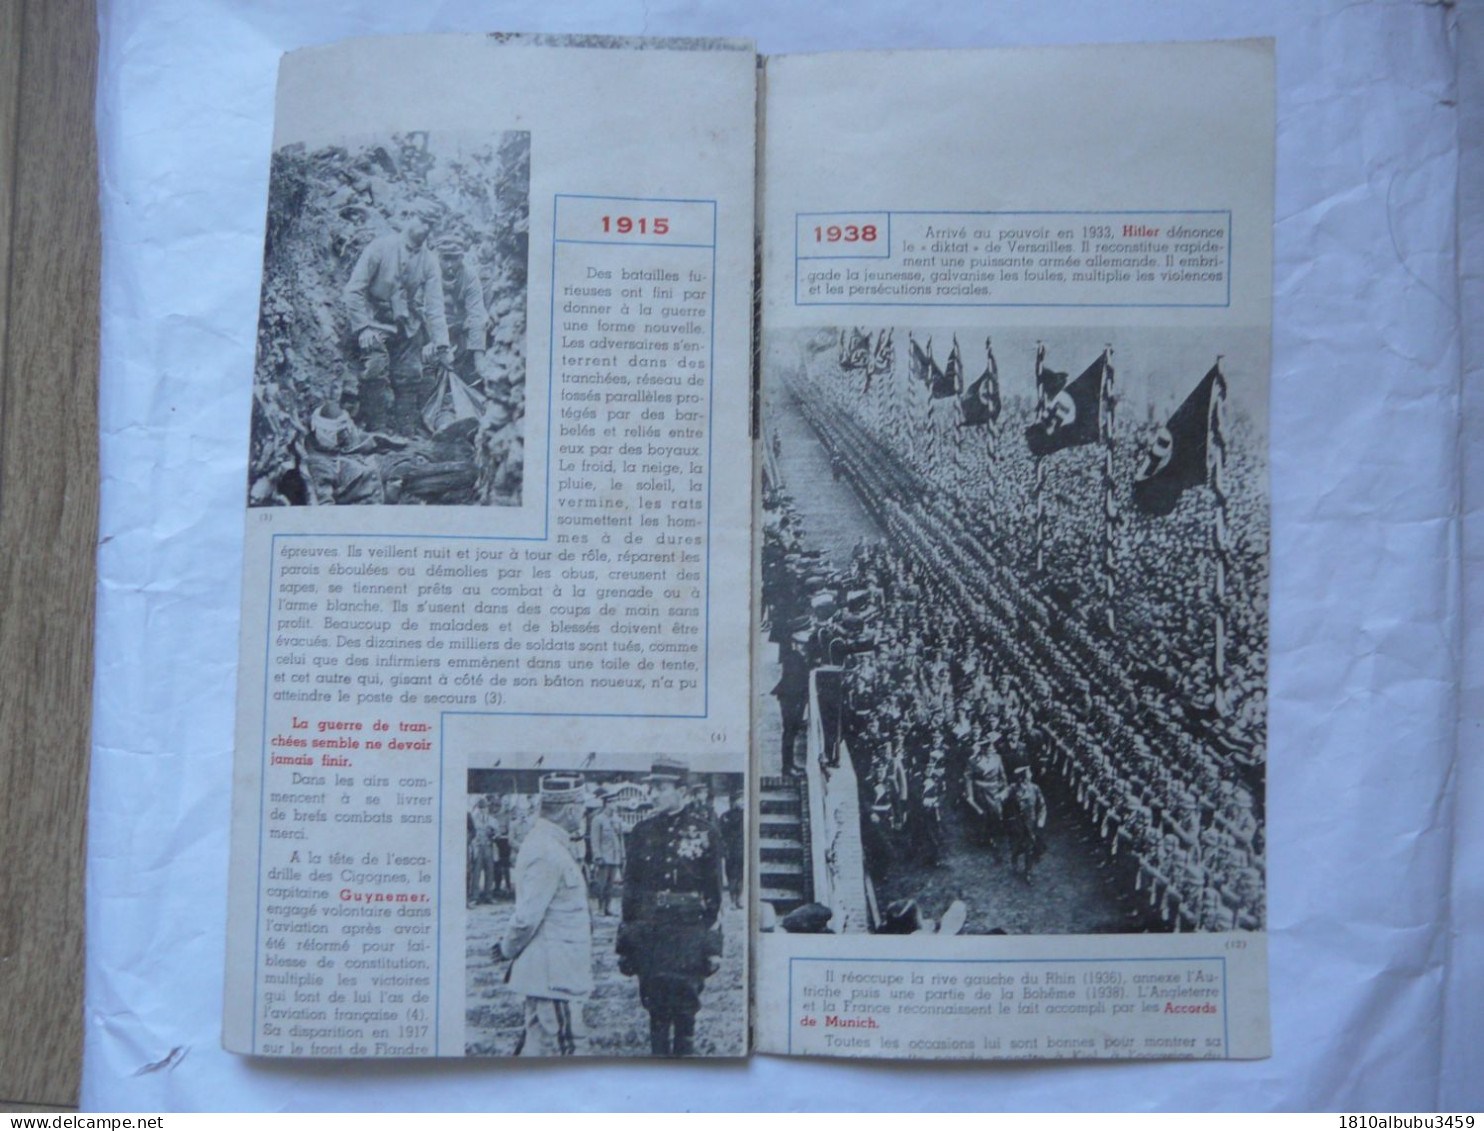 DEPLIANT HISTORIQUE 1914-1918 Les Deux Guerres Mondiales 1939-1945 - Historical Documents